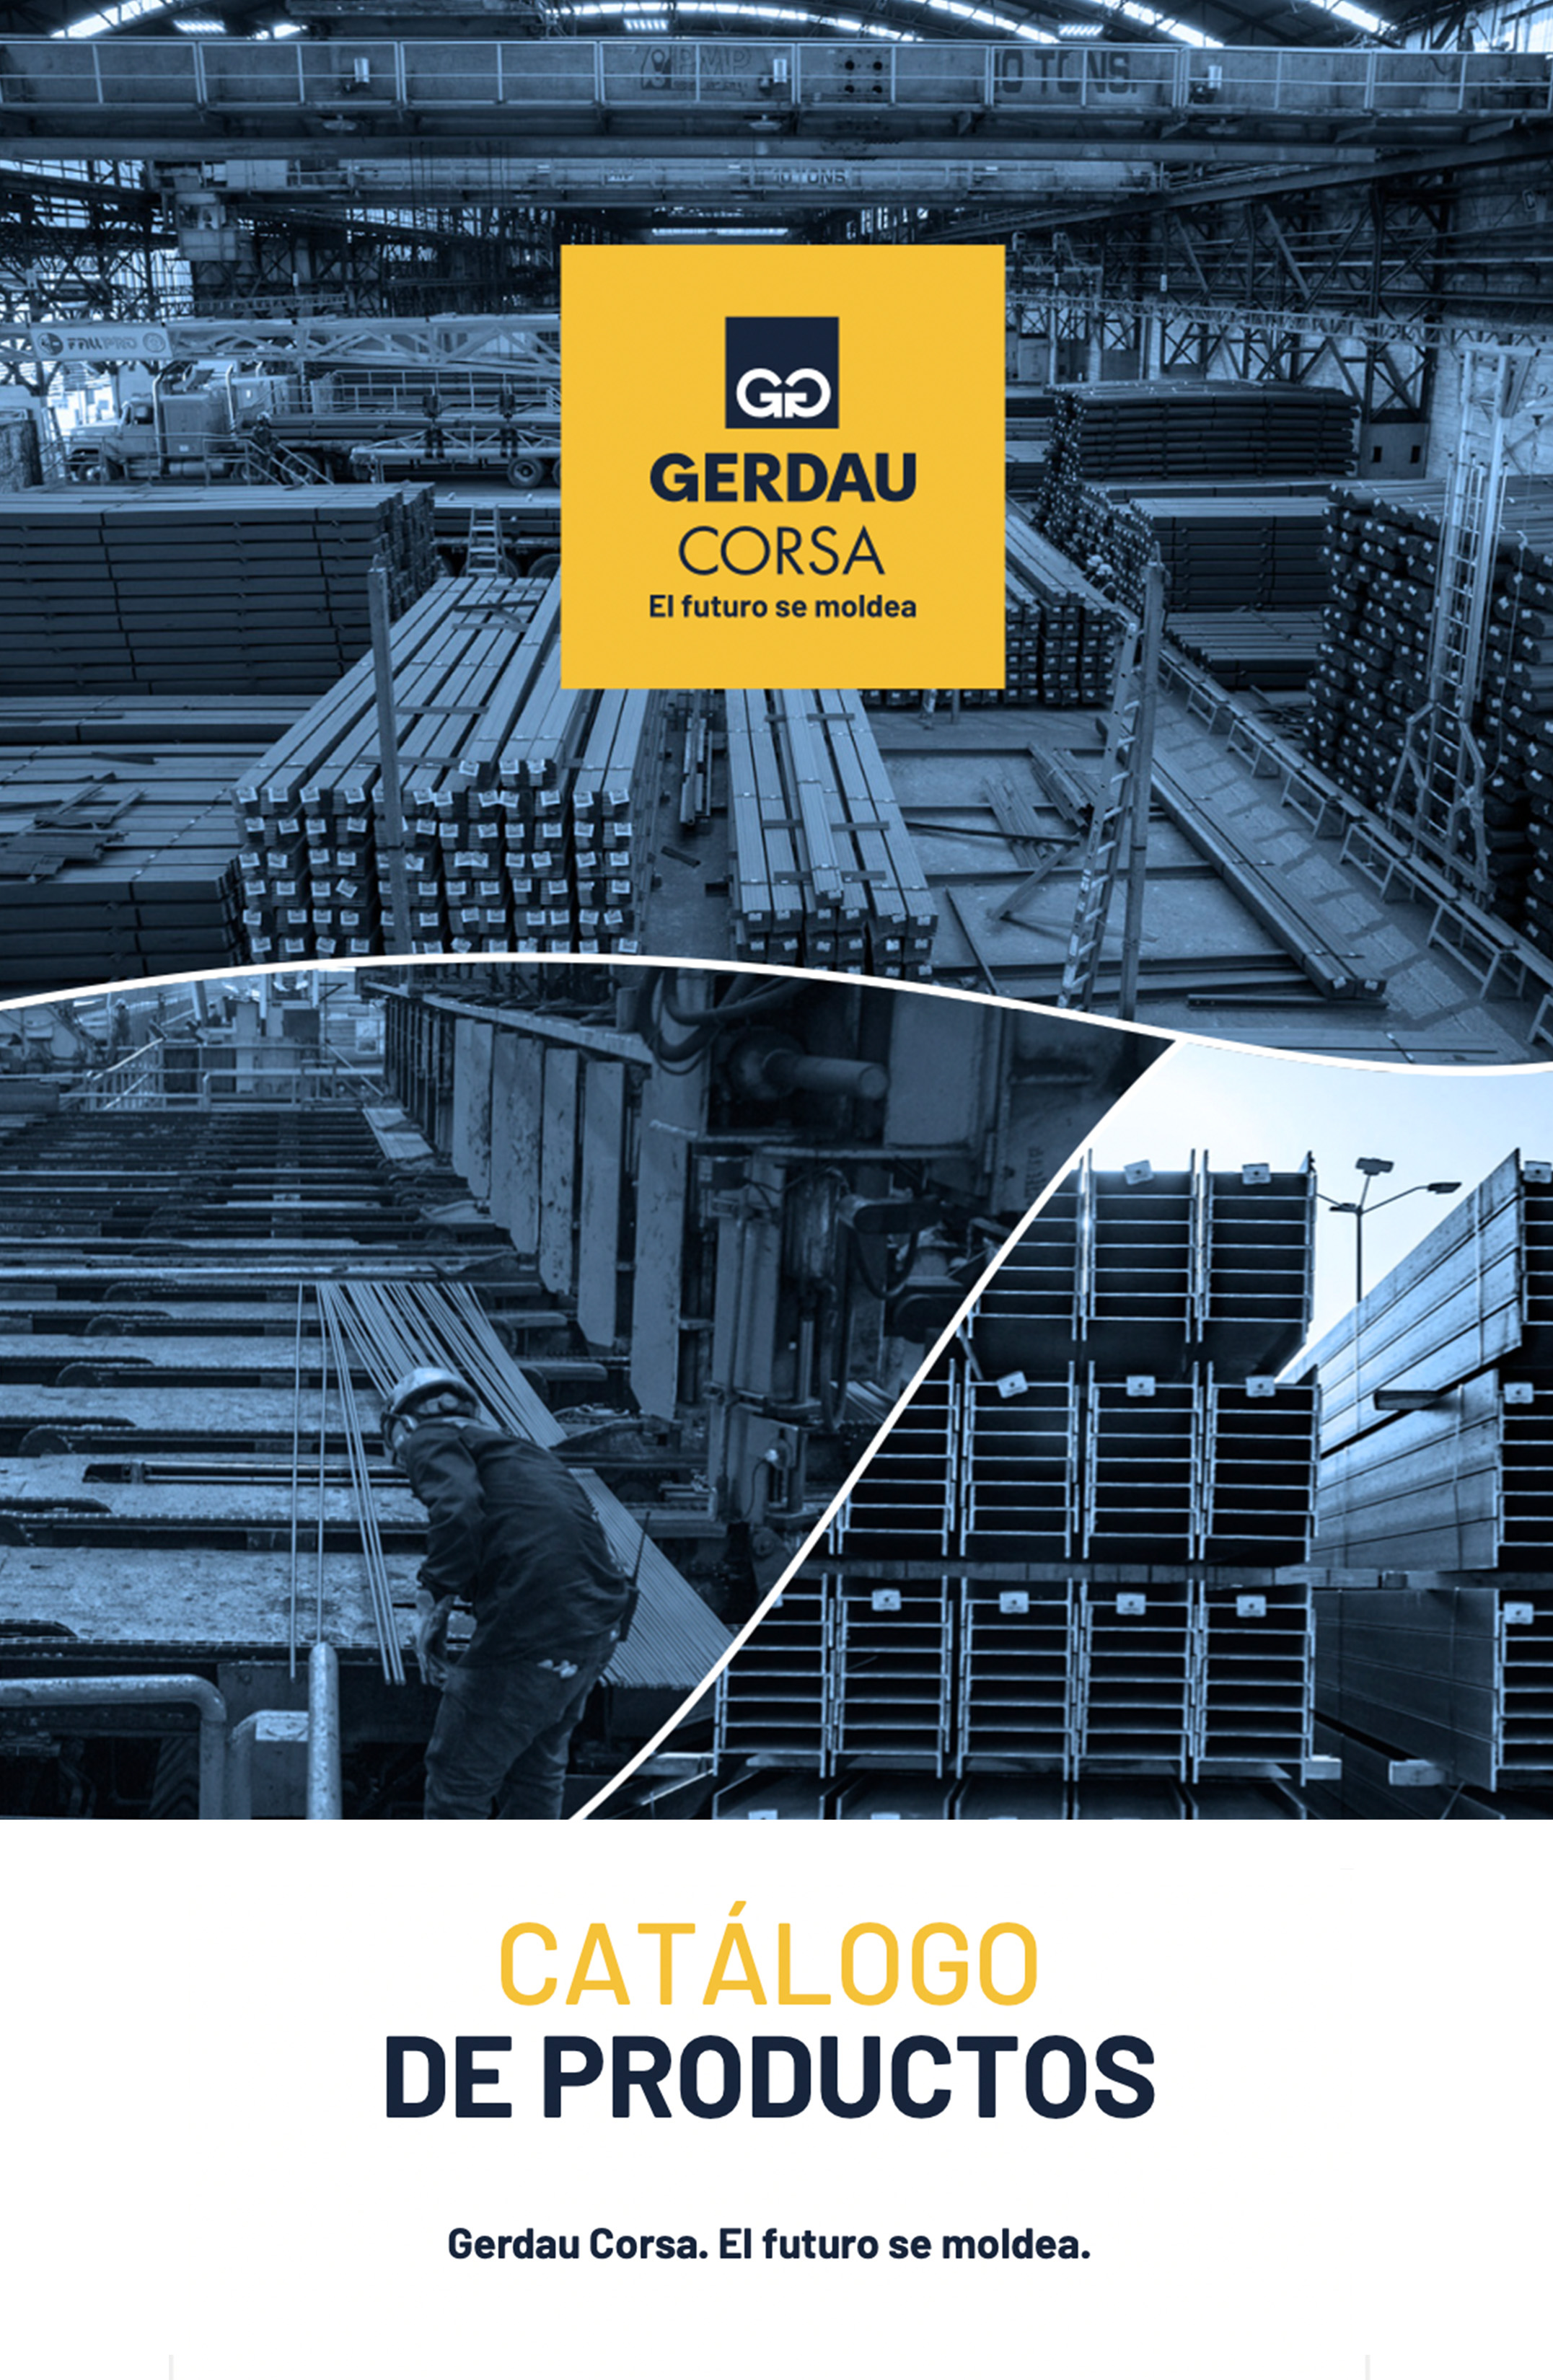 Catalogo-productos-Gerdau-Corsa